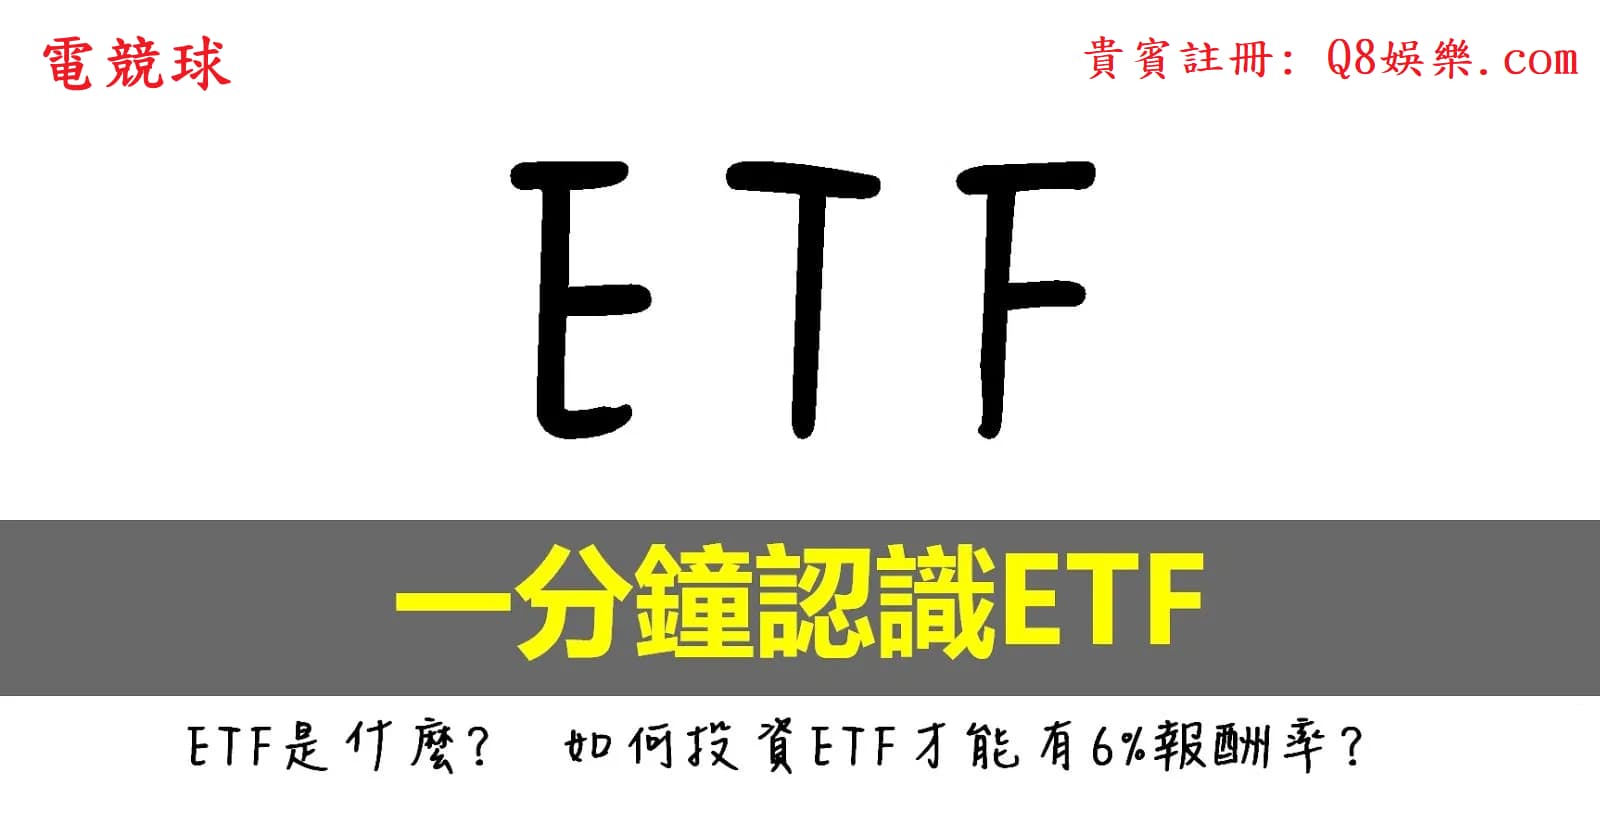 台灣股票 越南ETF 00885怎麼買？ 5分鐘簡單讓你快速了解內容、怎麼買！